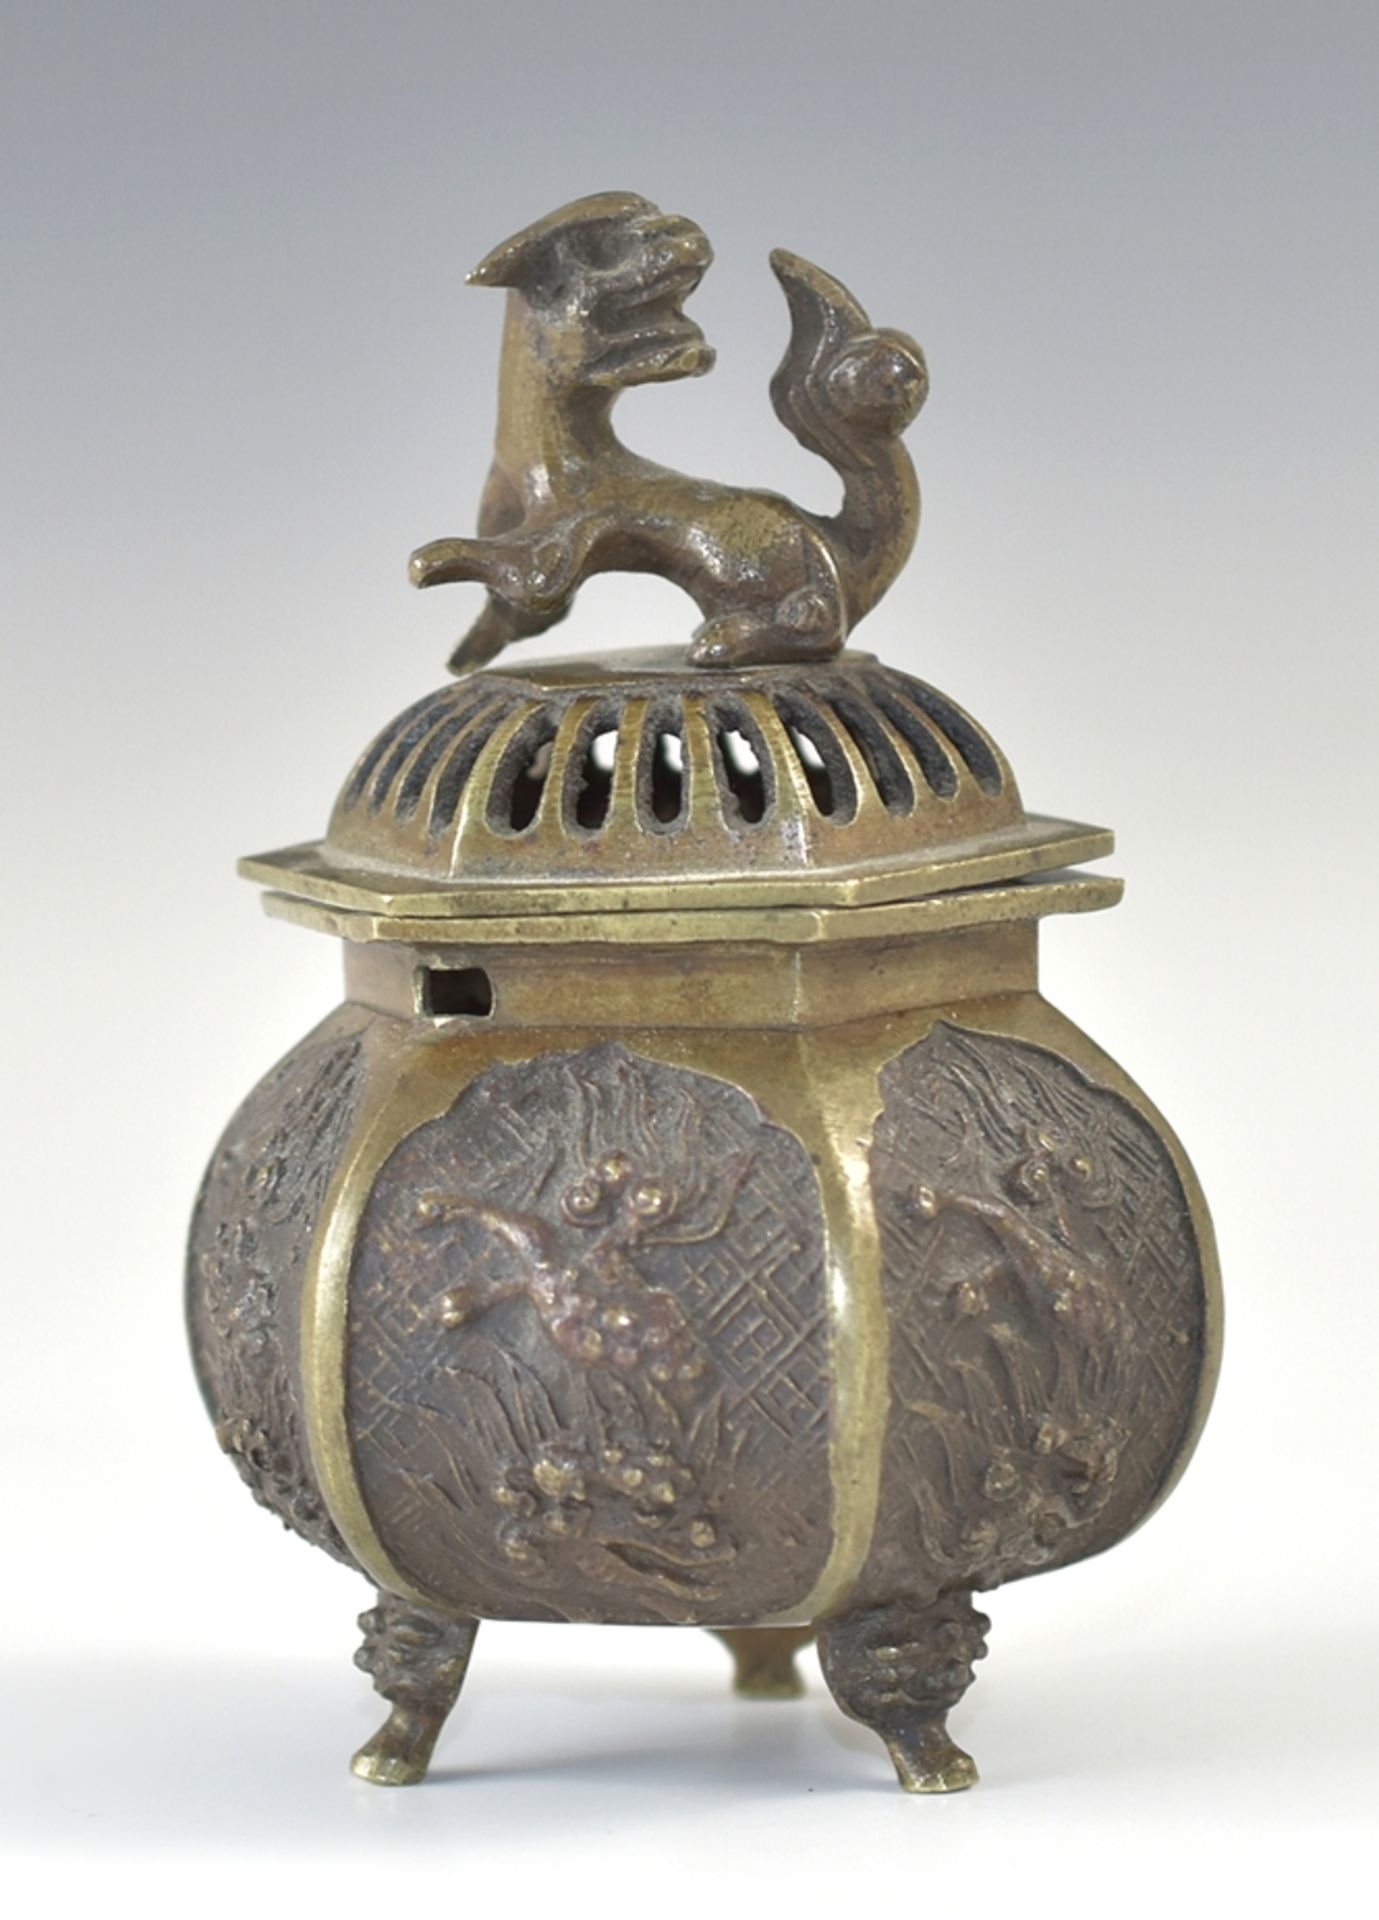 Hexagonales Räuchergefäß auf drei Füßen. Reliefdekor. Bronze. China. H 11,5 cm